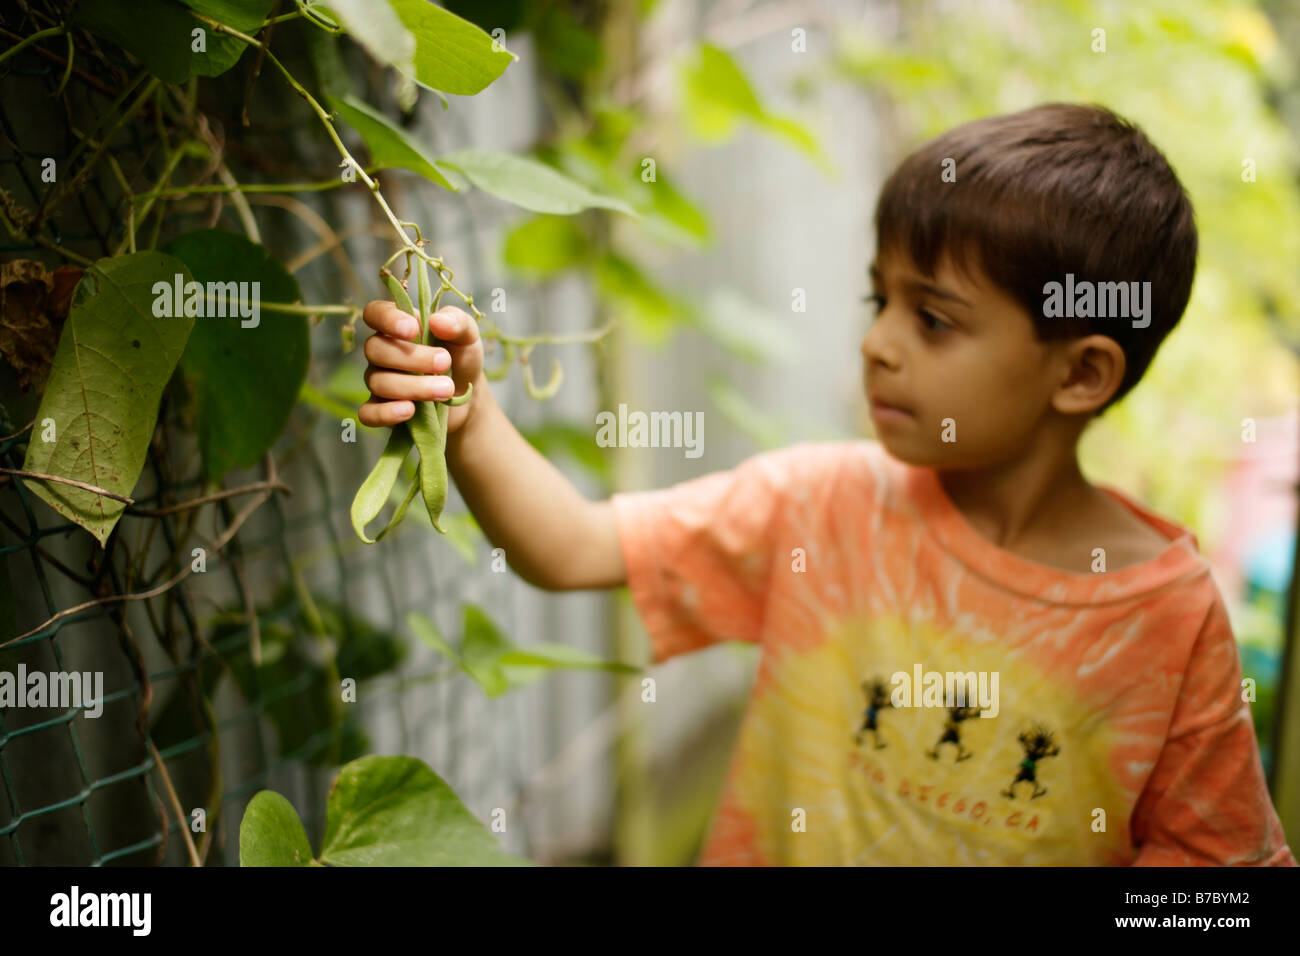 6 anno vecchio ragazzo raccoglie i fagiolini verdi in giardino patch vegetale Foto Stock